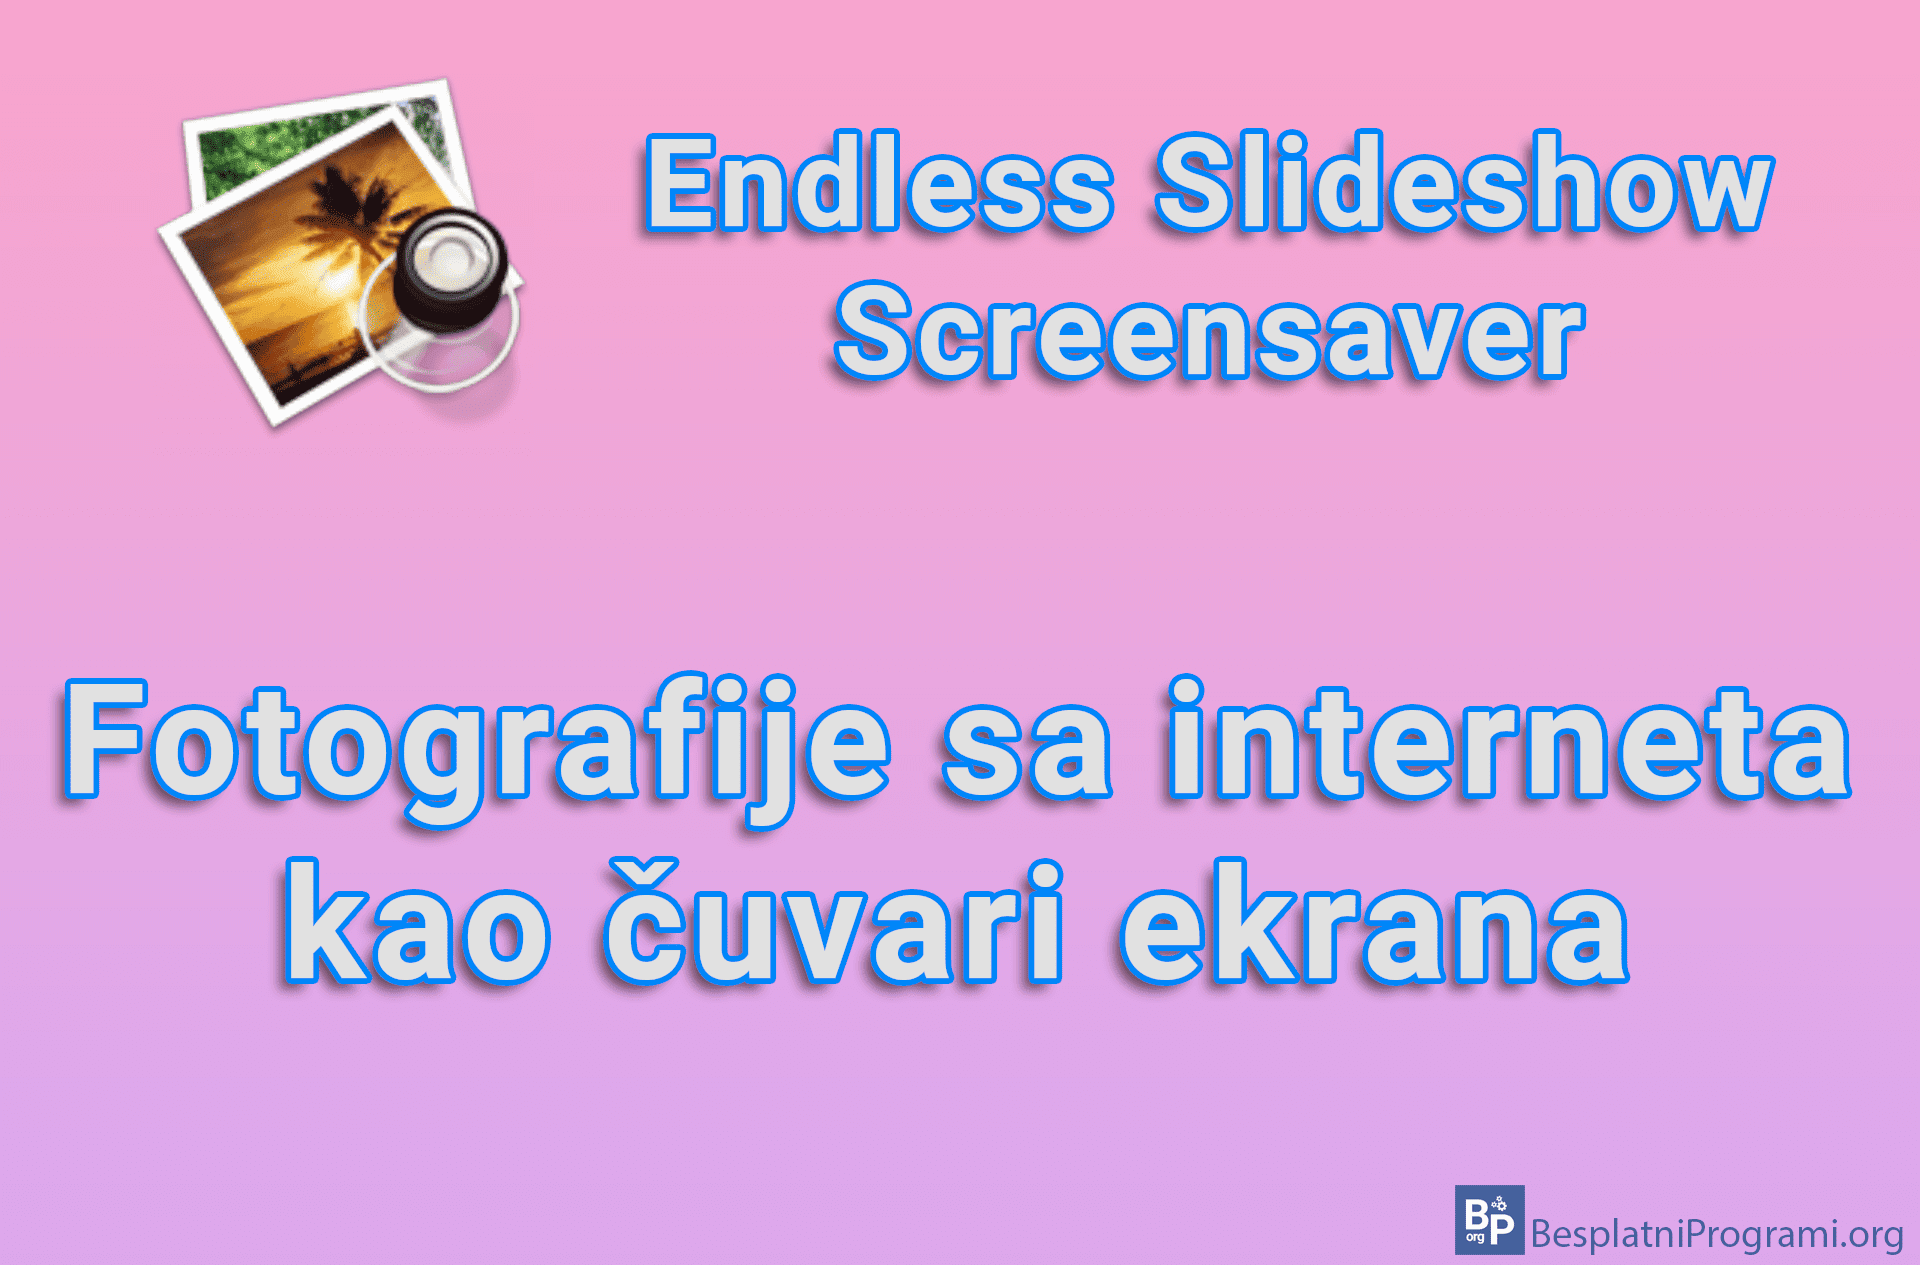 Endless Slideshow Screensaver – Fotografije sa interneta kao čuvari ekrana